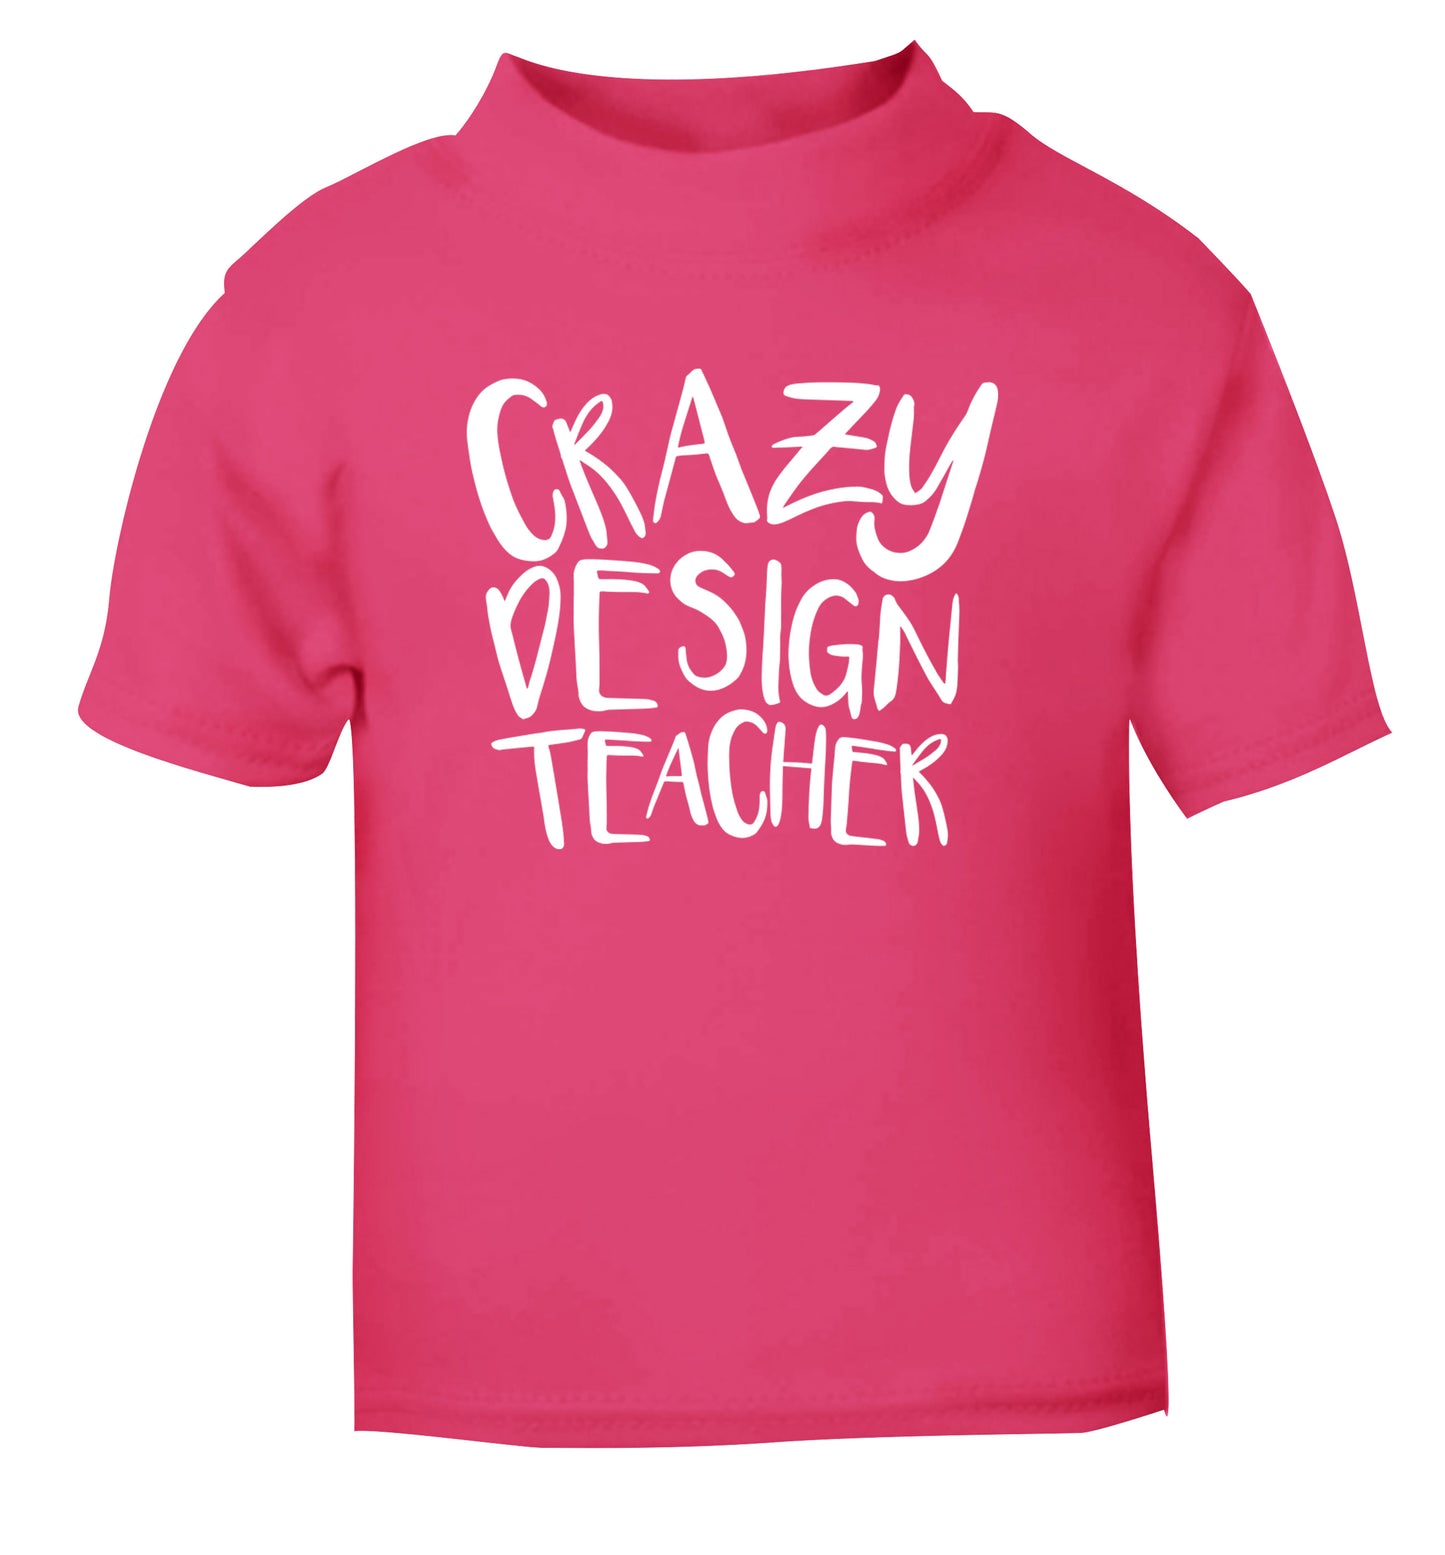 Crazy design teacher pink Baby Toddler Tshirt 2 Years